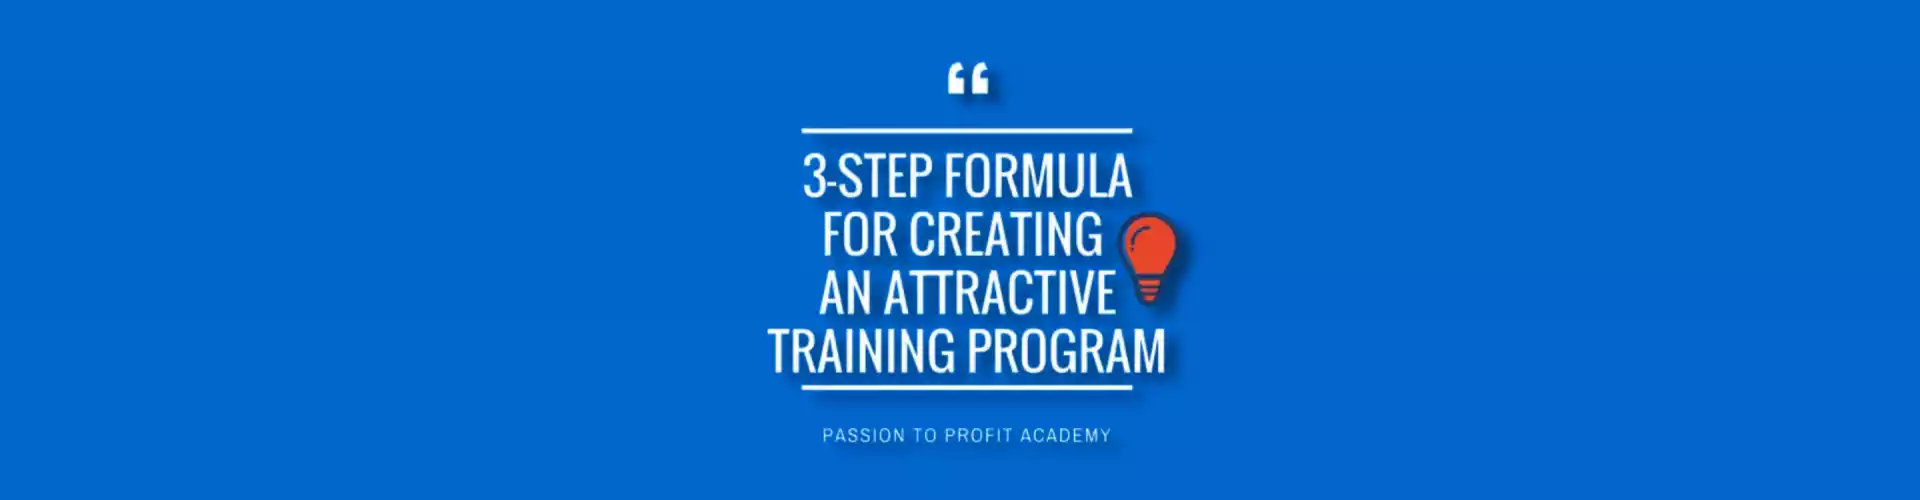 एक आकर्षक प्रशिक्षण कार्यक्रम बनाने के लिए 3-चरणीय सूत्र - बहुभाषी